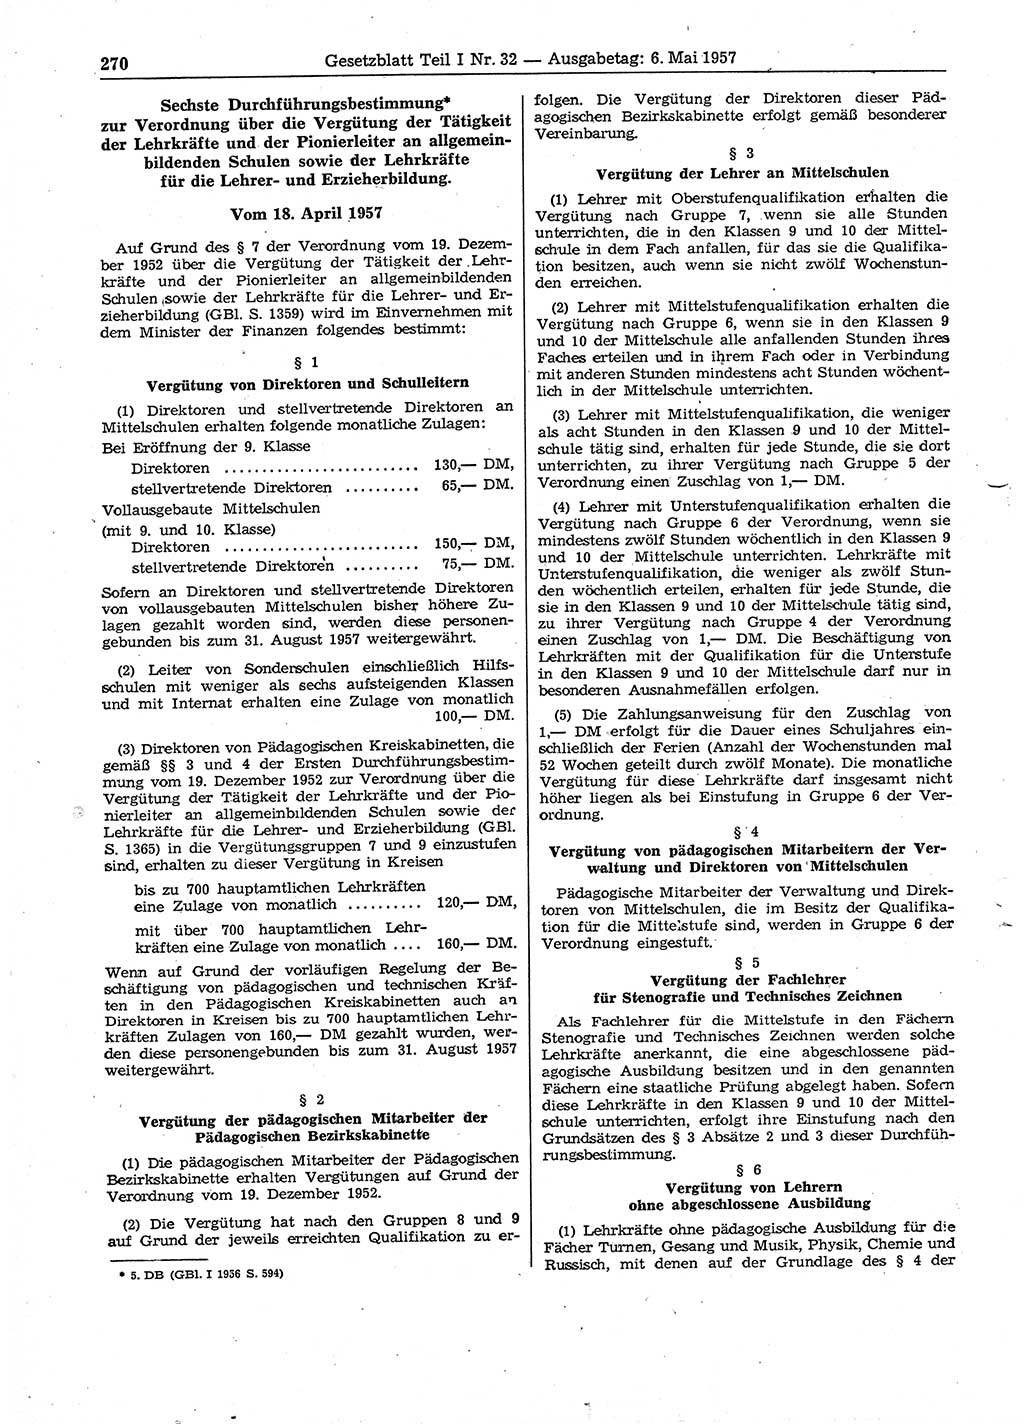 Gesetzblatt (GBl.) der Deutschen Demokratischen Republik (DDR) Teil Ⅰ 1957, Seite 270 (GBl. DDR Ⅰ 1957, S. 270)